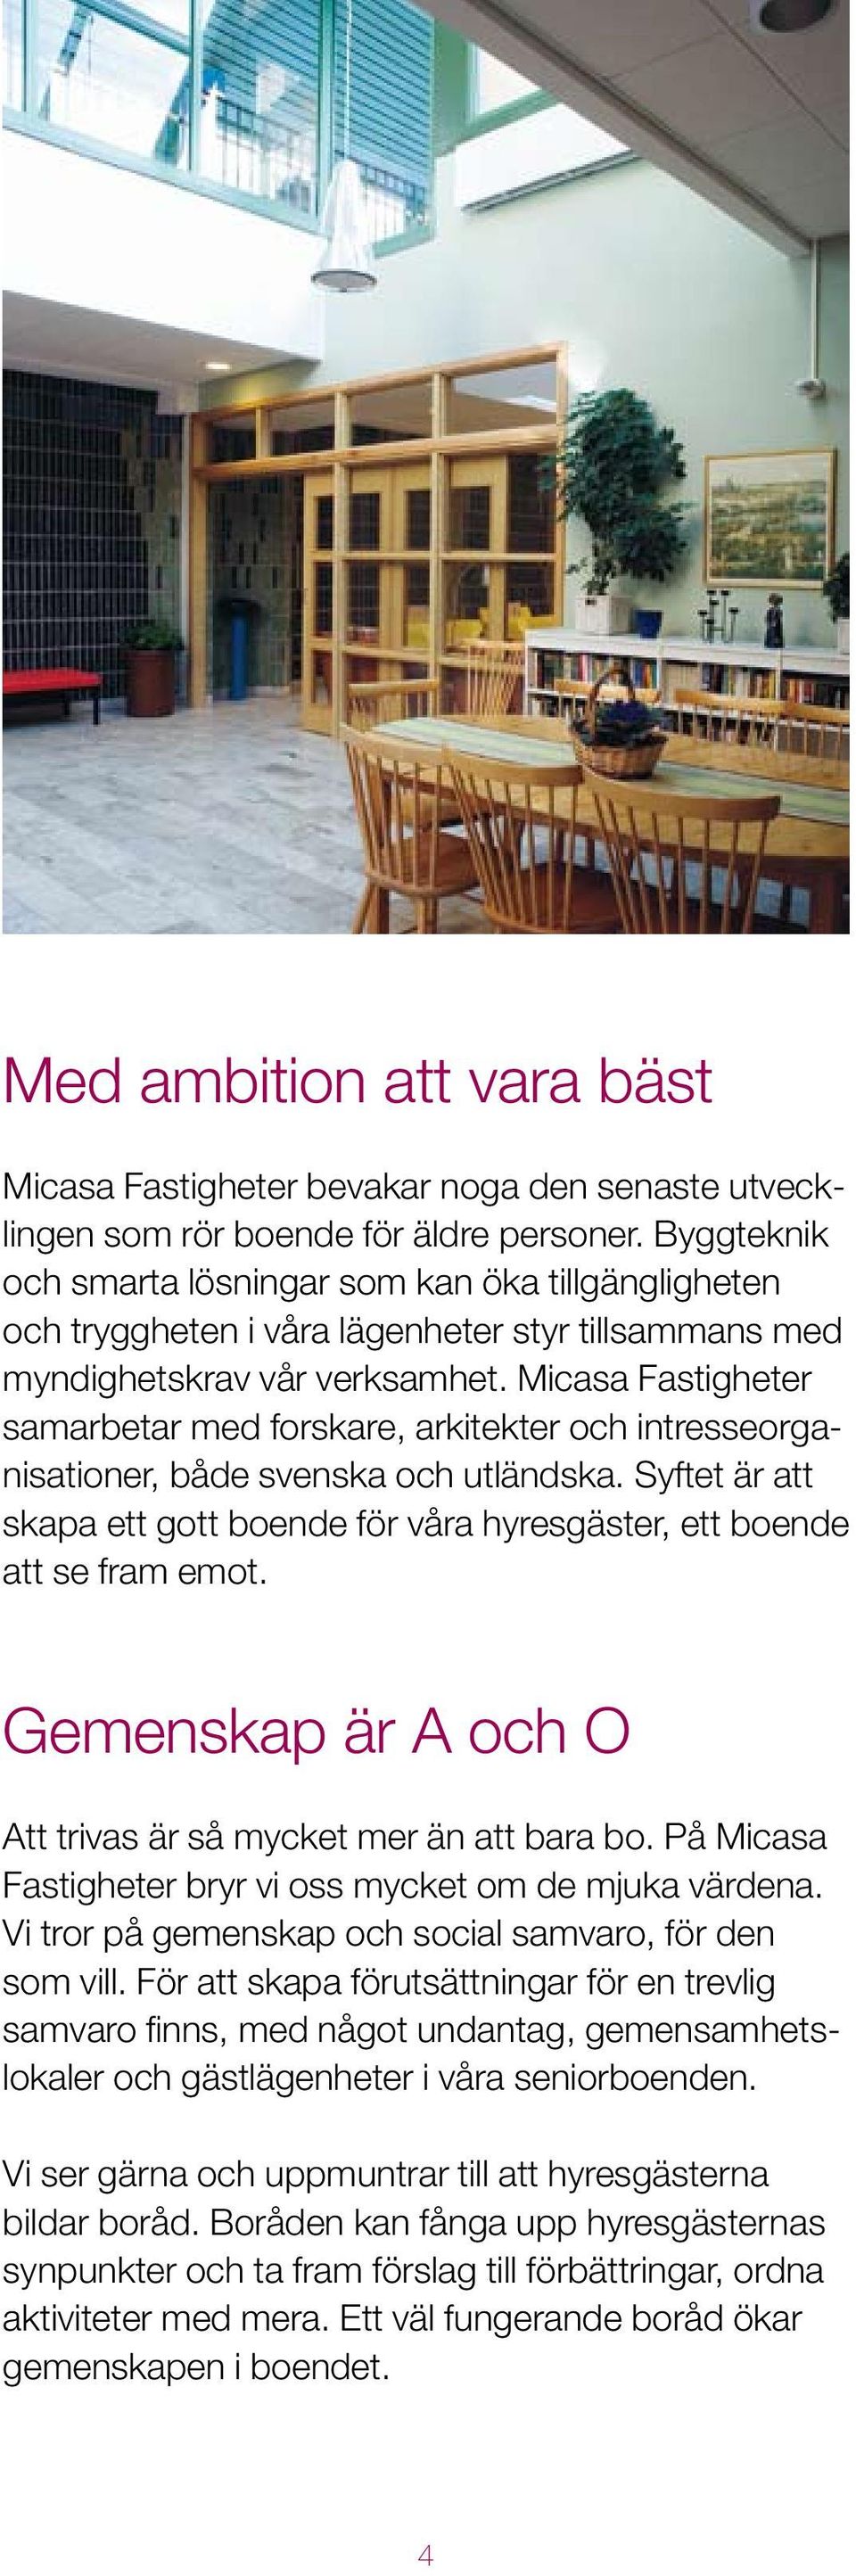 Micasa Fastigheter samarbetar med forskare, arkitekter och intresseorganisationer, både svenska och utländska. Syftet är att skapa ett gott boende för våra hyresgäster, ett boende att se fram emot.